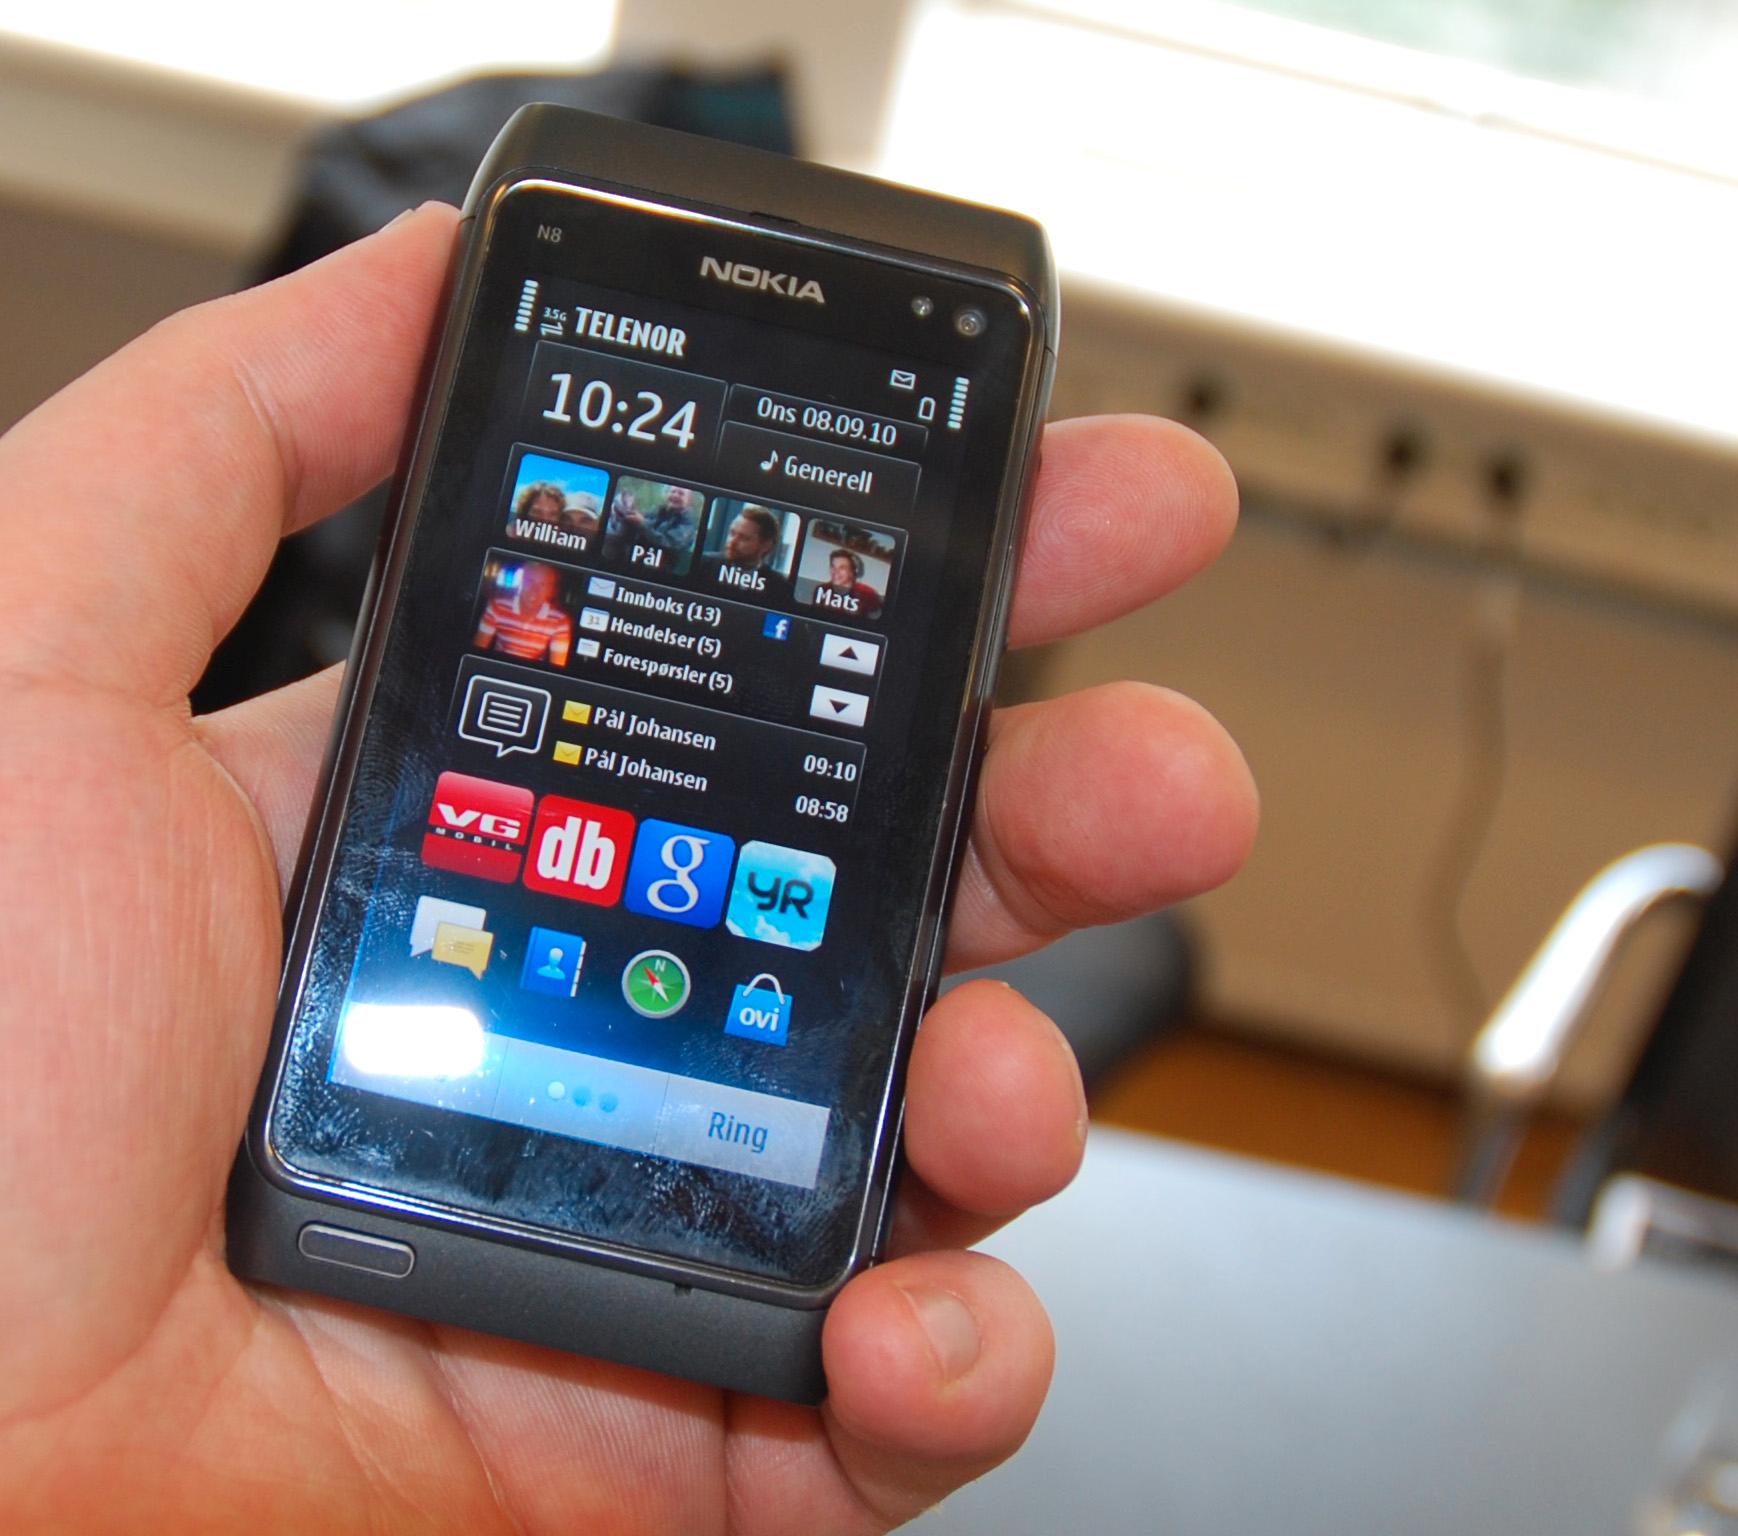 Hjemmeskjermene på N8 er det største beviset på at noe nytt har skjedd med Symbian.